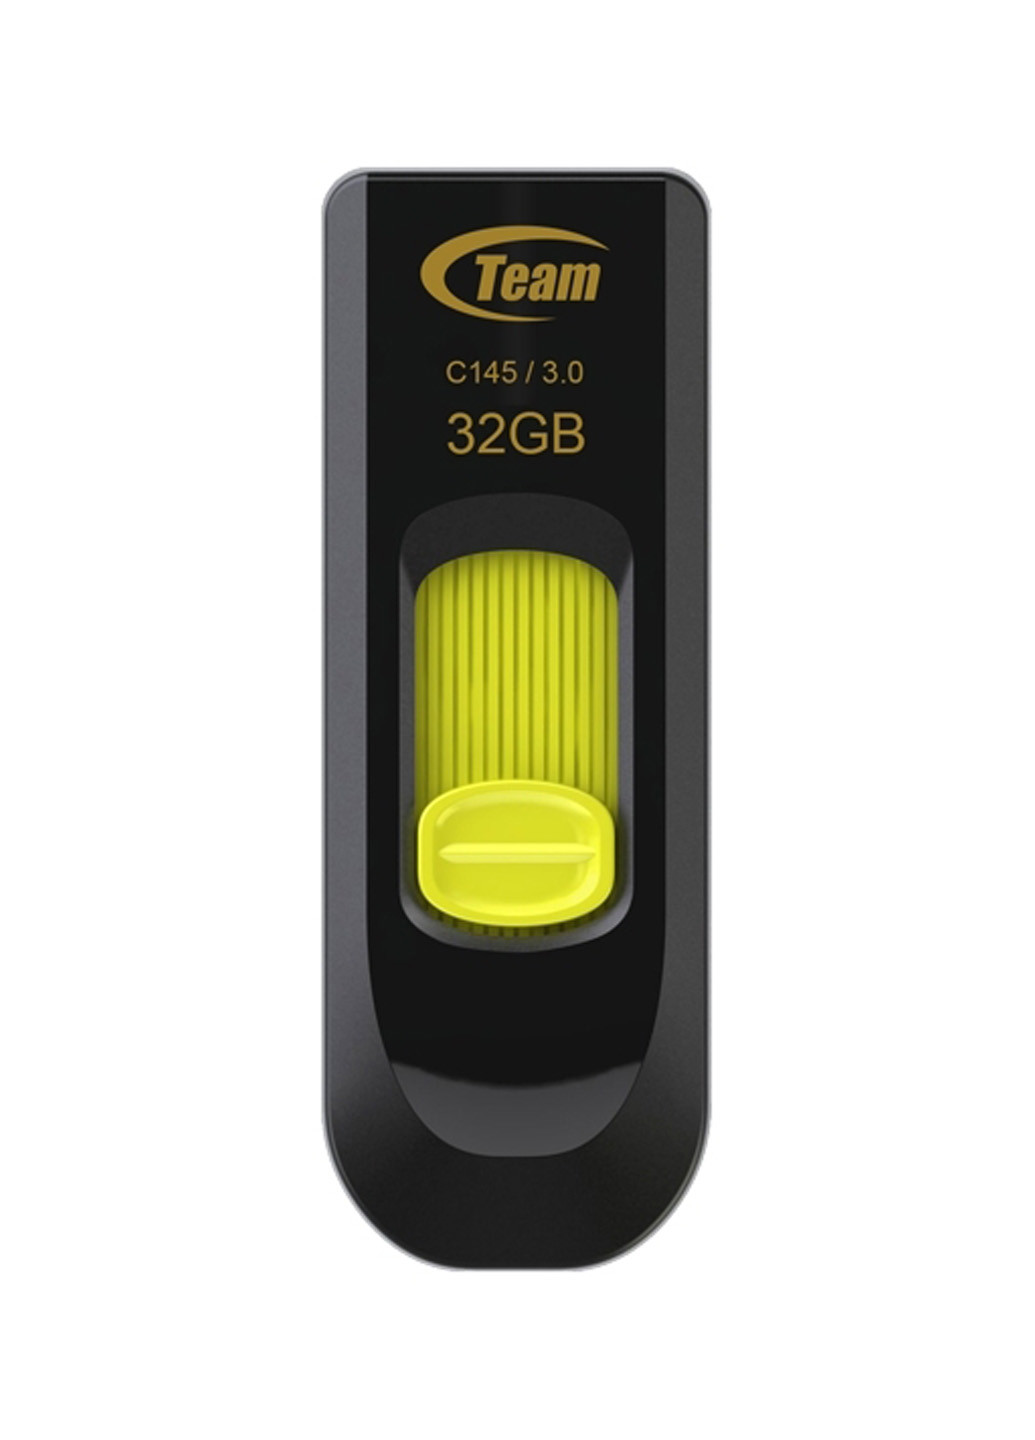 Флеш пам'ять USB C145 32GB Yellow (TC145332GY01) Team флеш память usb team c145 32gb yellow (tc145332gy01) (134201761)